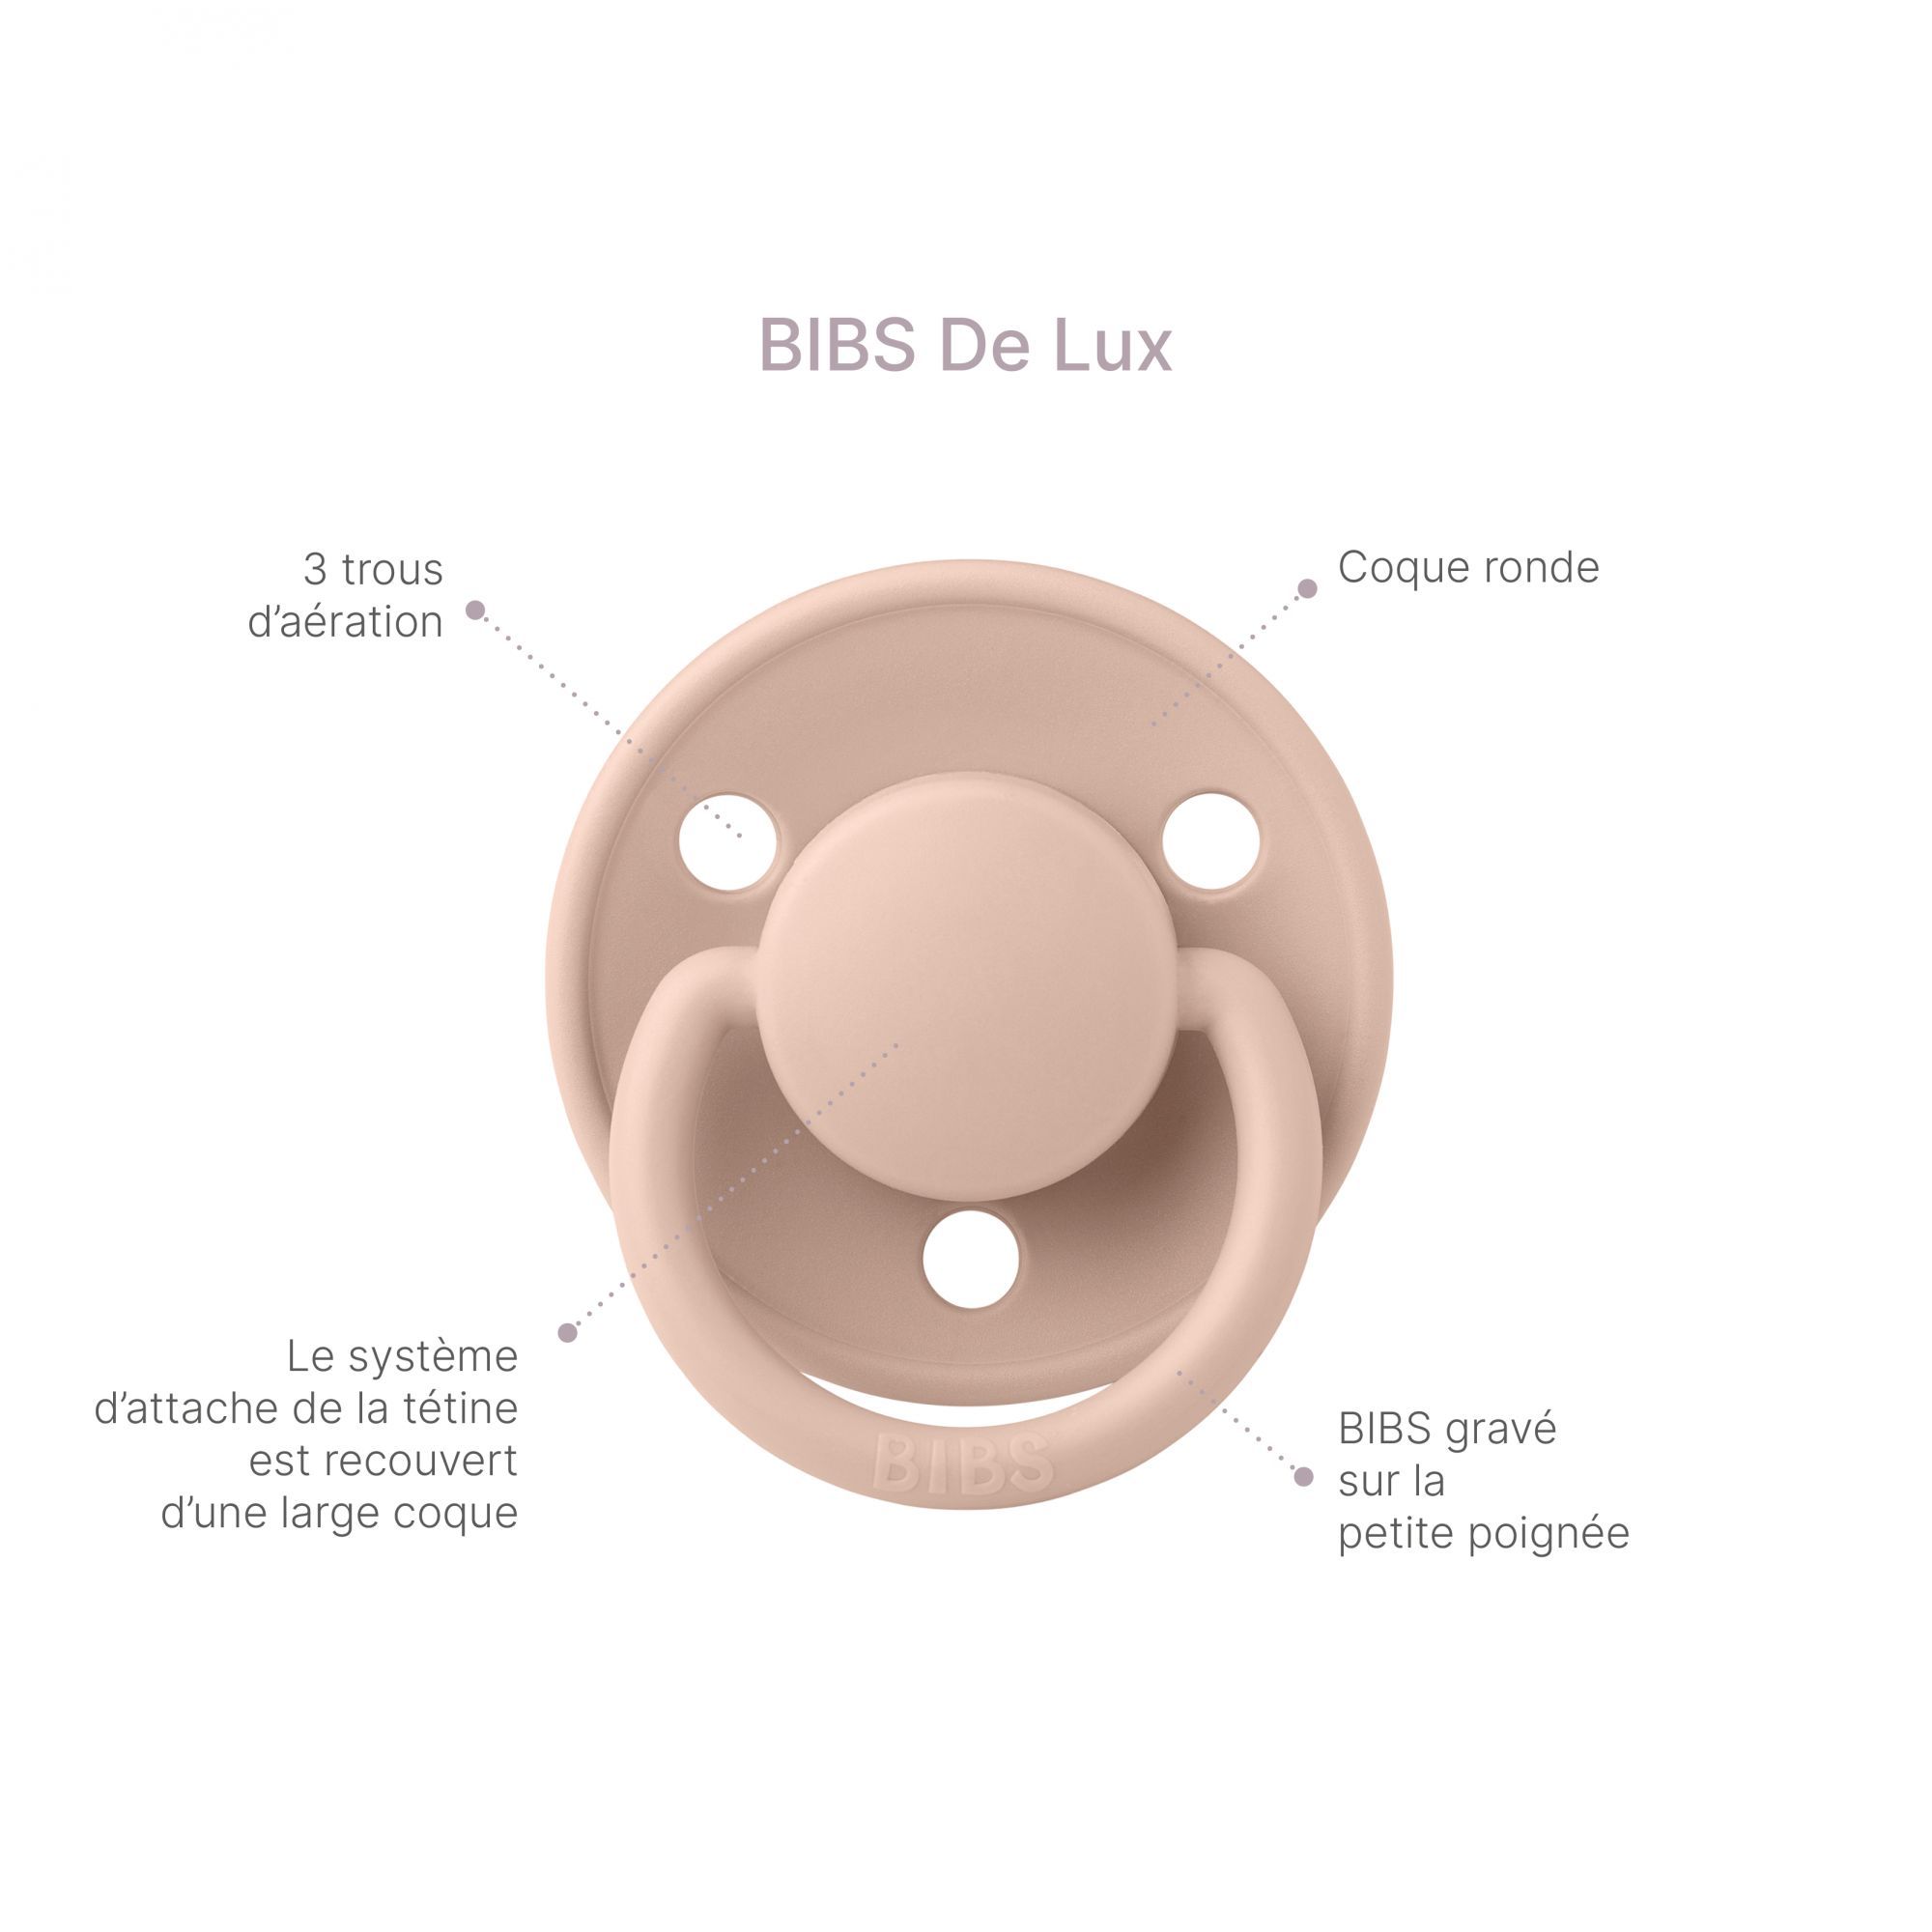 Sucettes Bibs De Lux silicone taille unique - Ivoire / rose blush